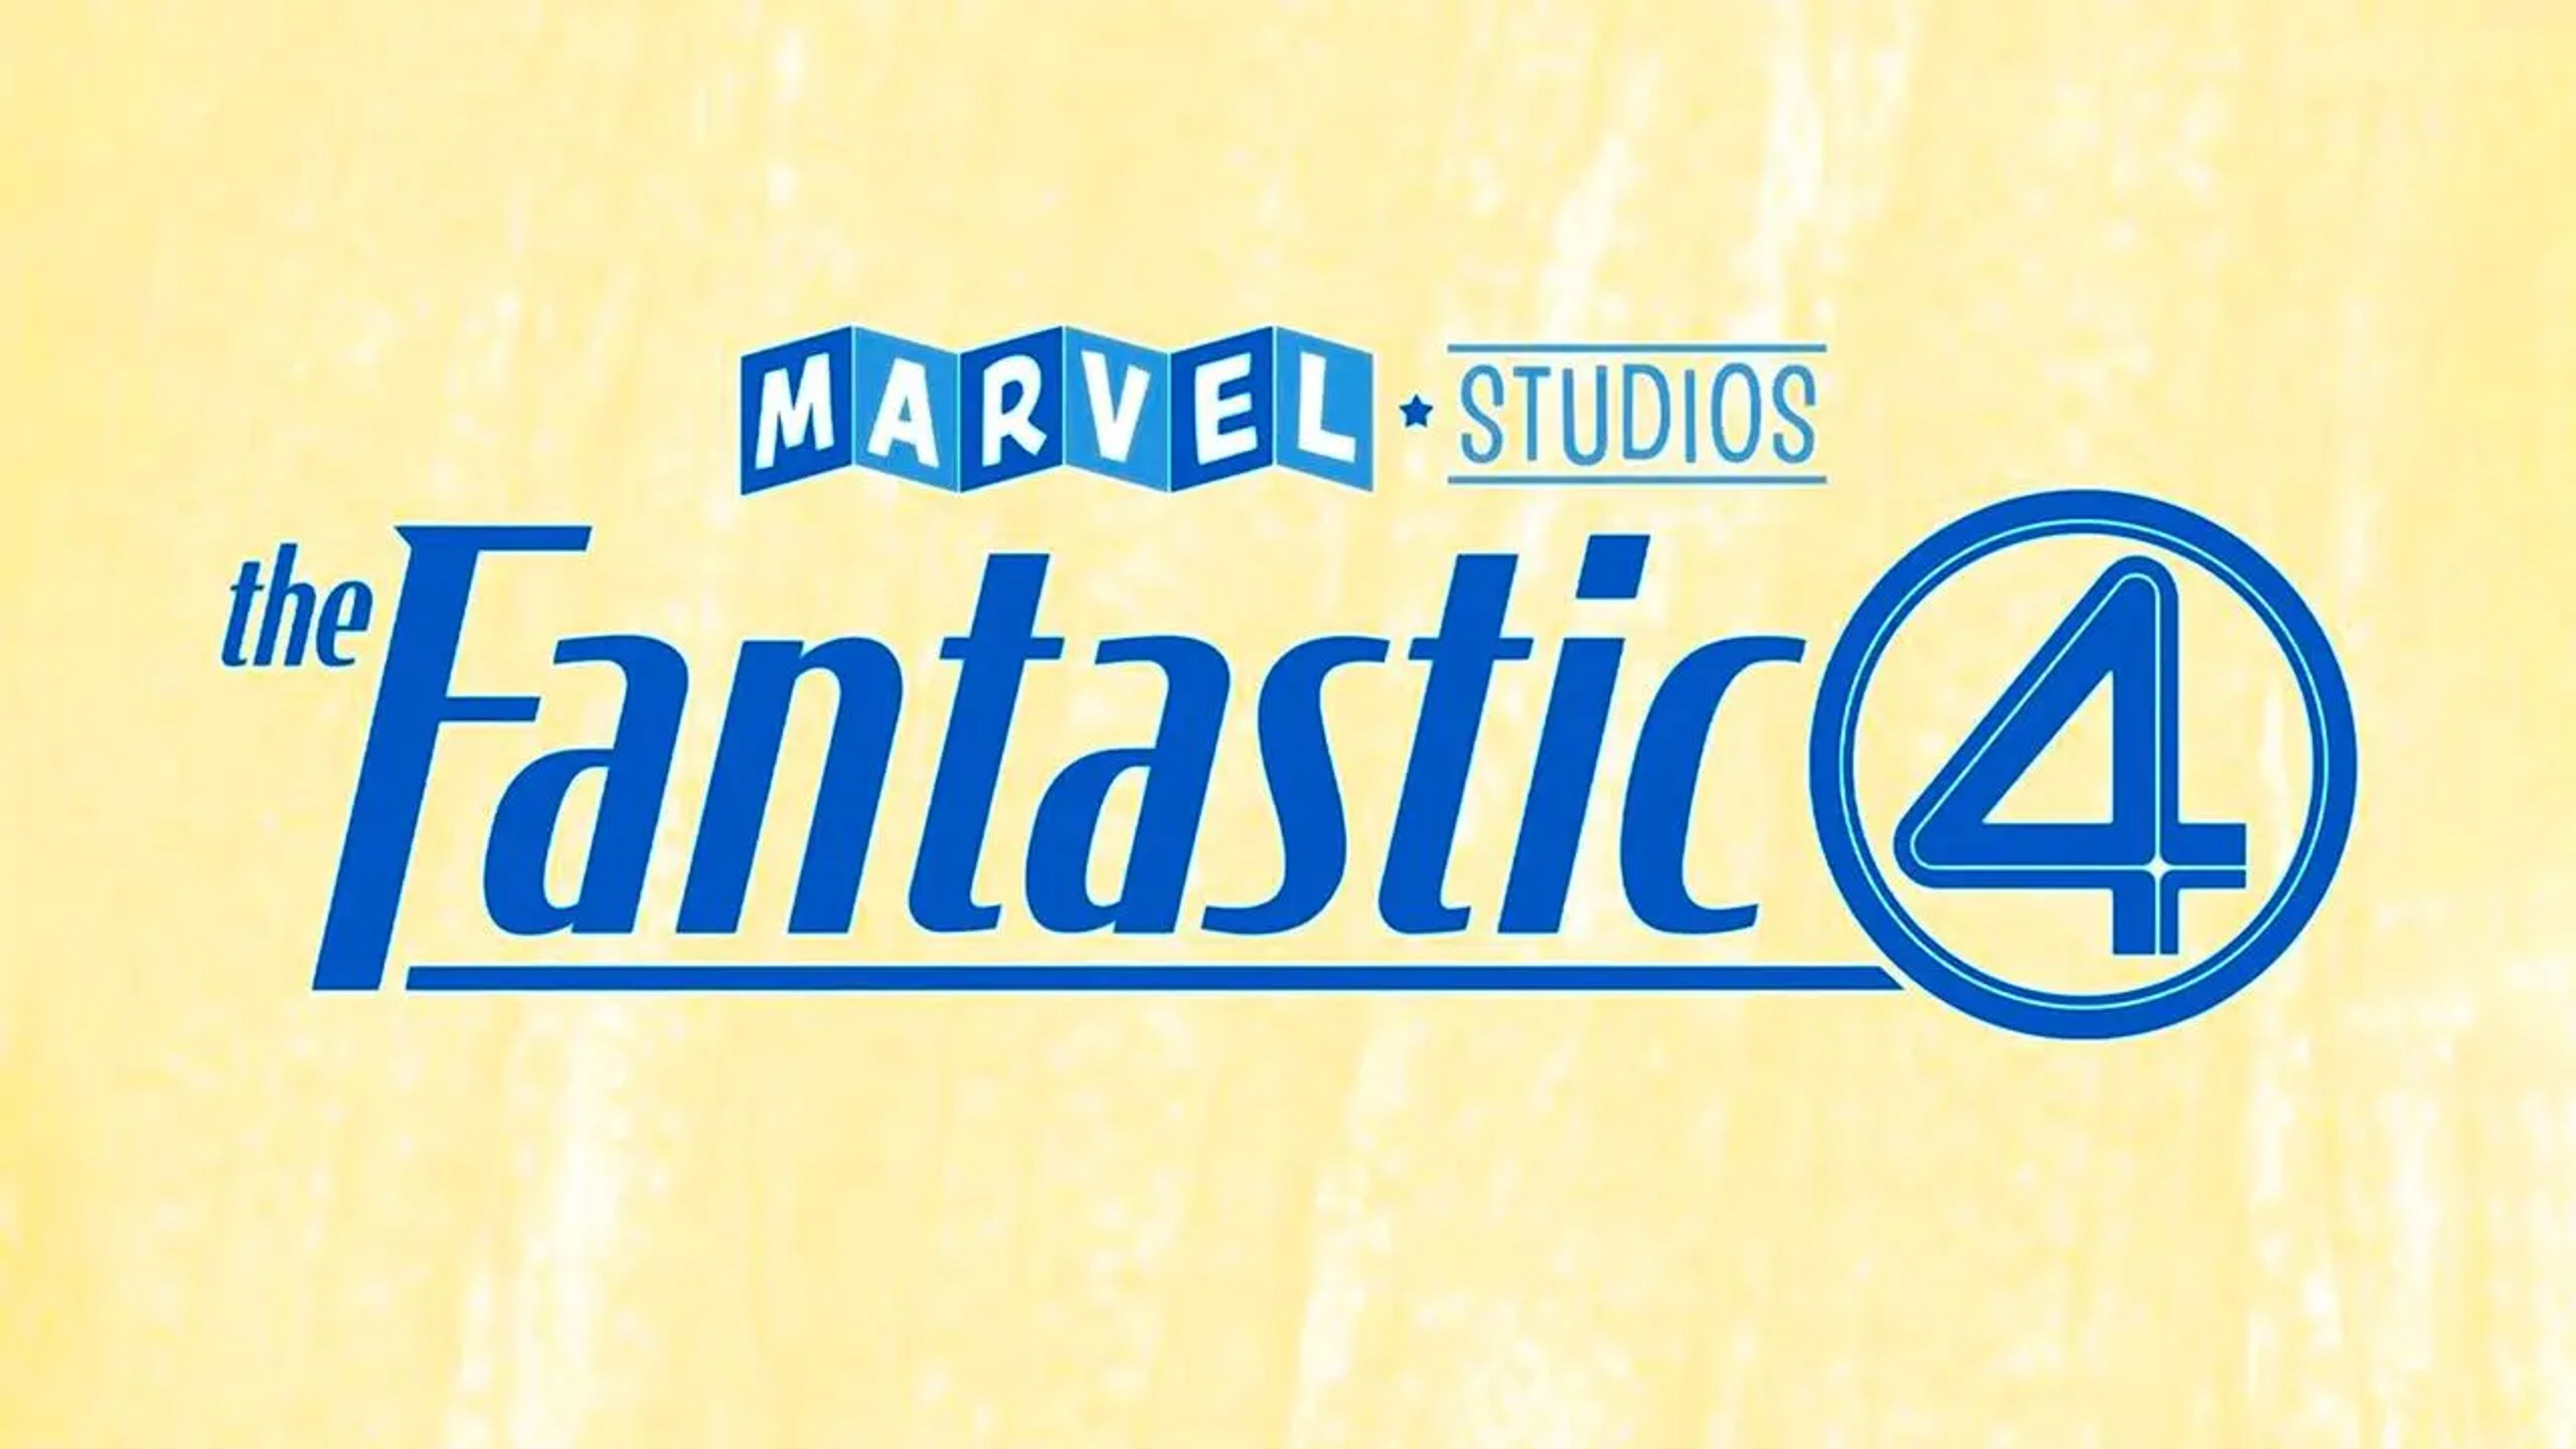 The Fantastic 4: ecco il cast ufficiale e la data di uscita Cover